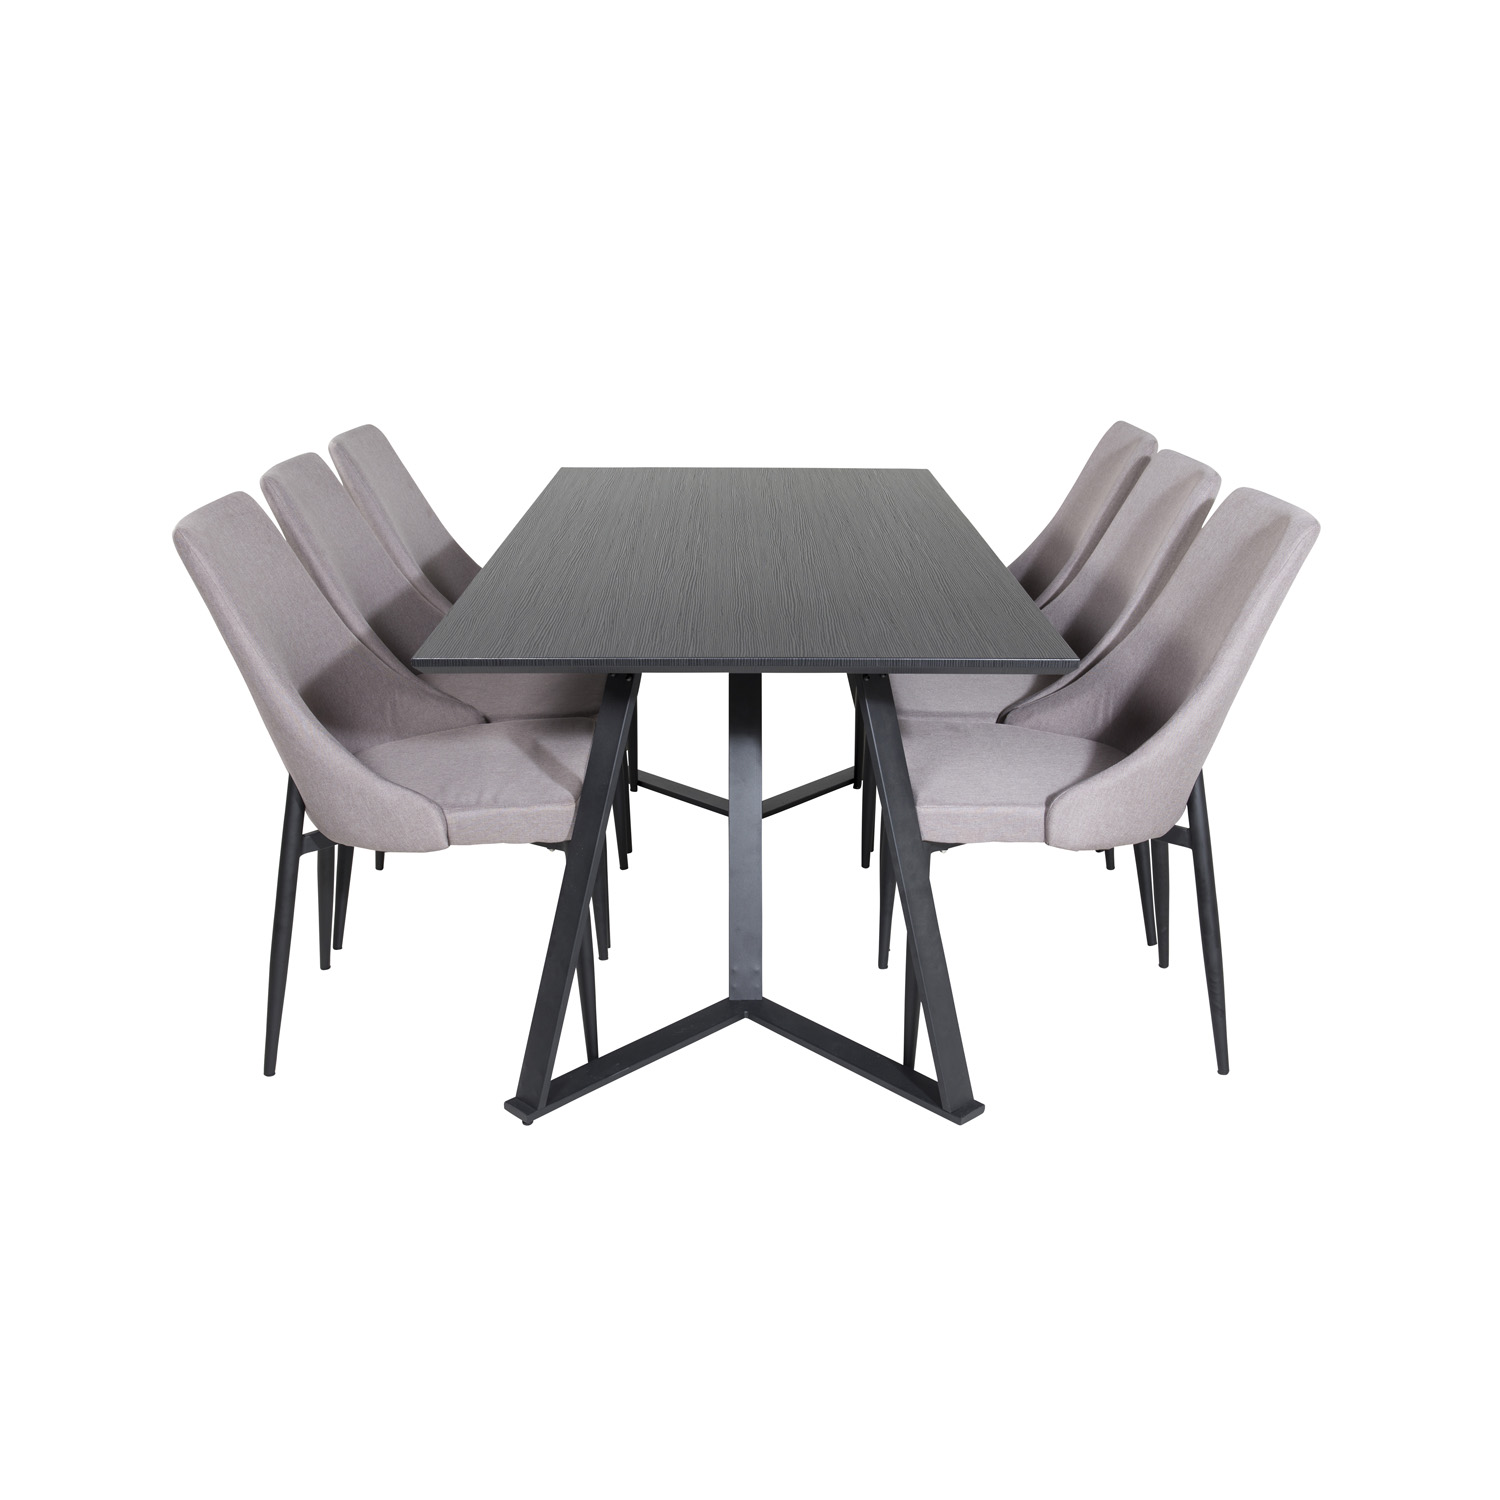 11: VENTURE DESIGN Marina spisebordssæt, m. 6 stole - sort finer/sort metal og grå stof/sort metal